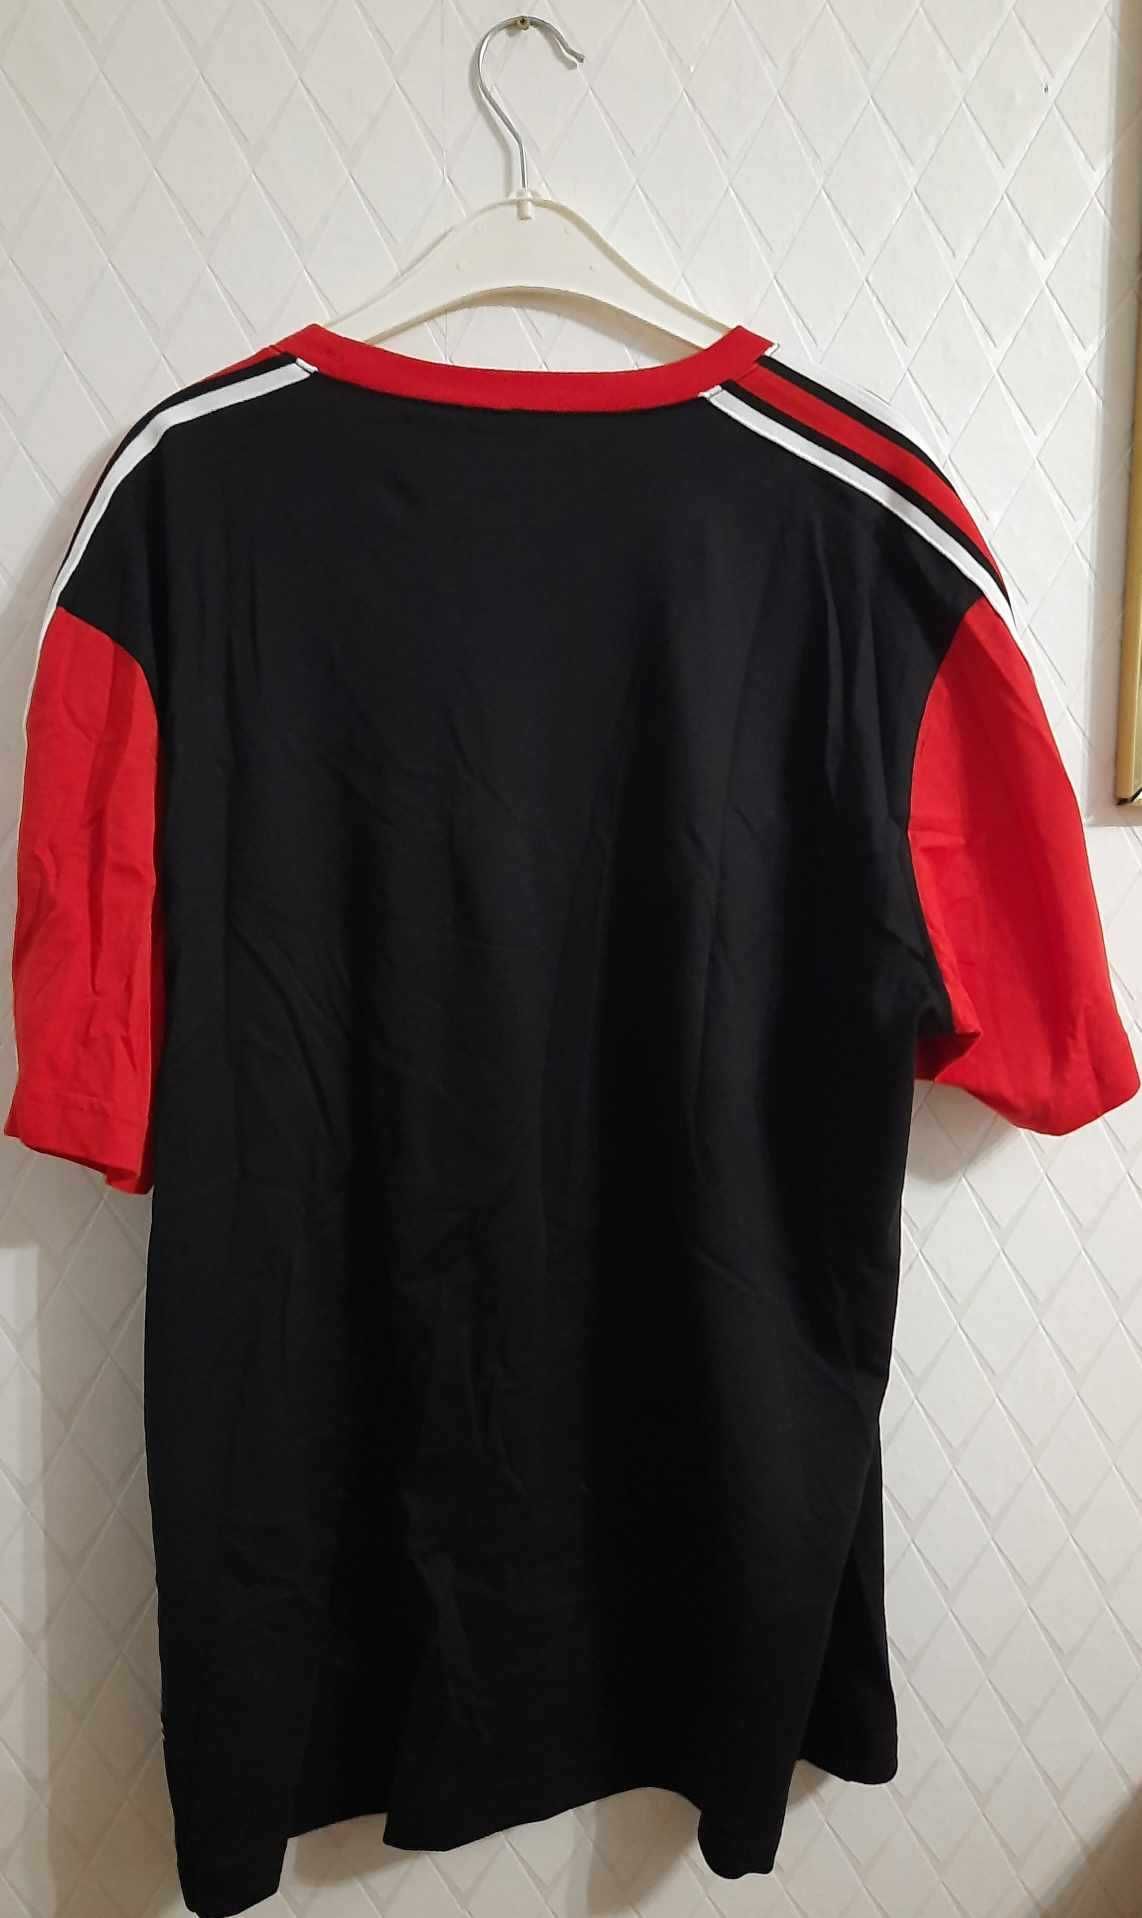 Czarno-czerwona koszulka z krótkim rękawem marki Champion